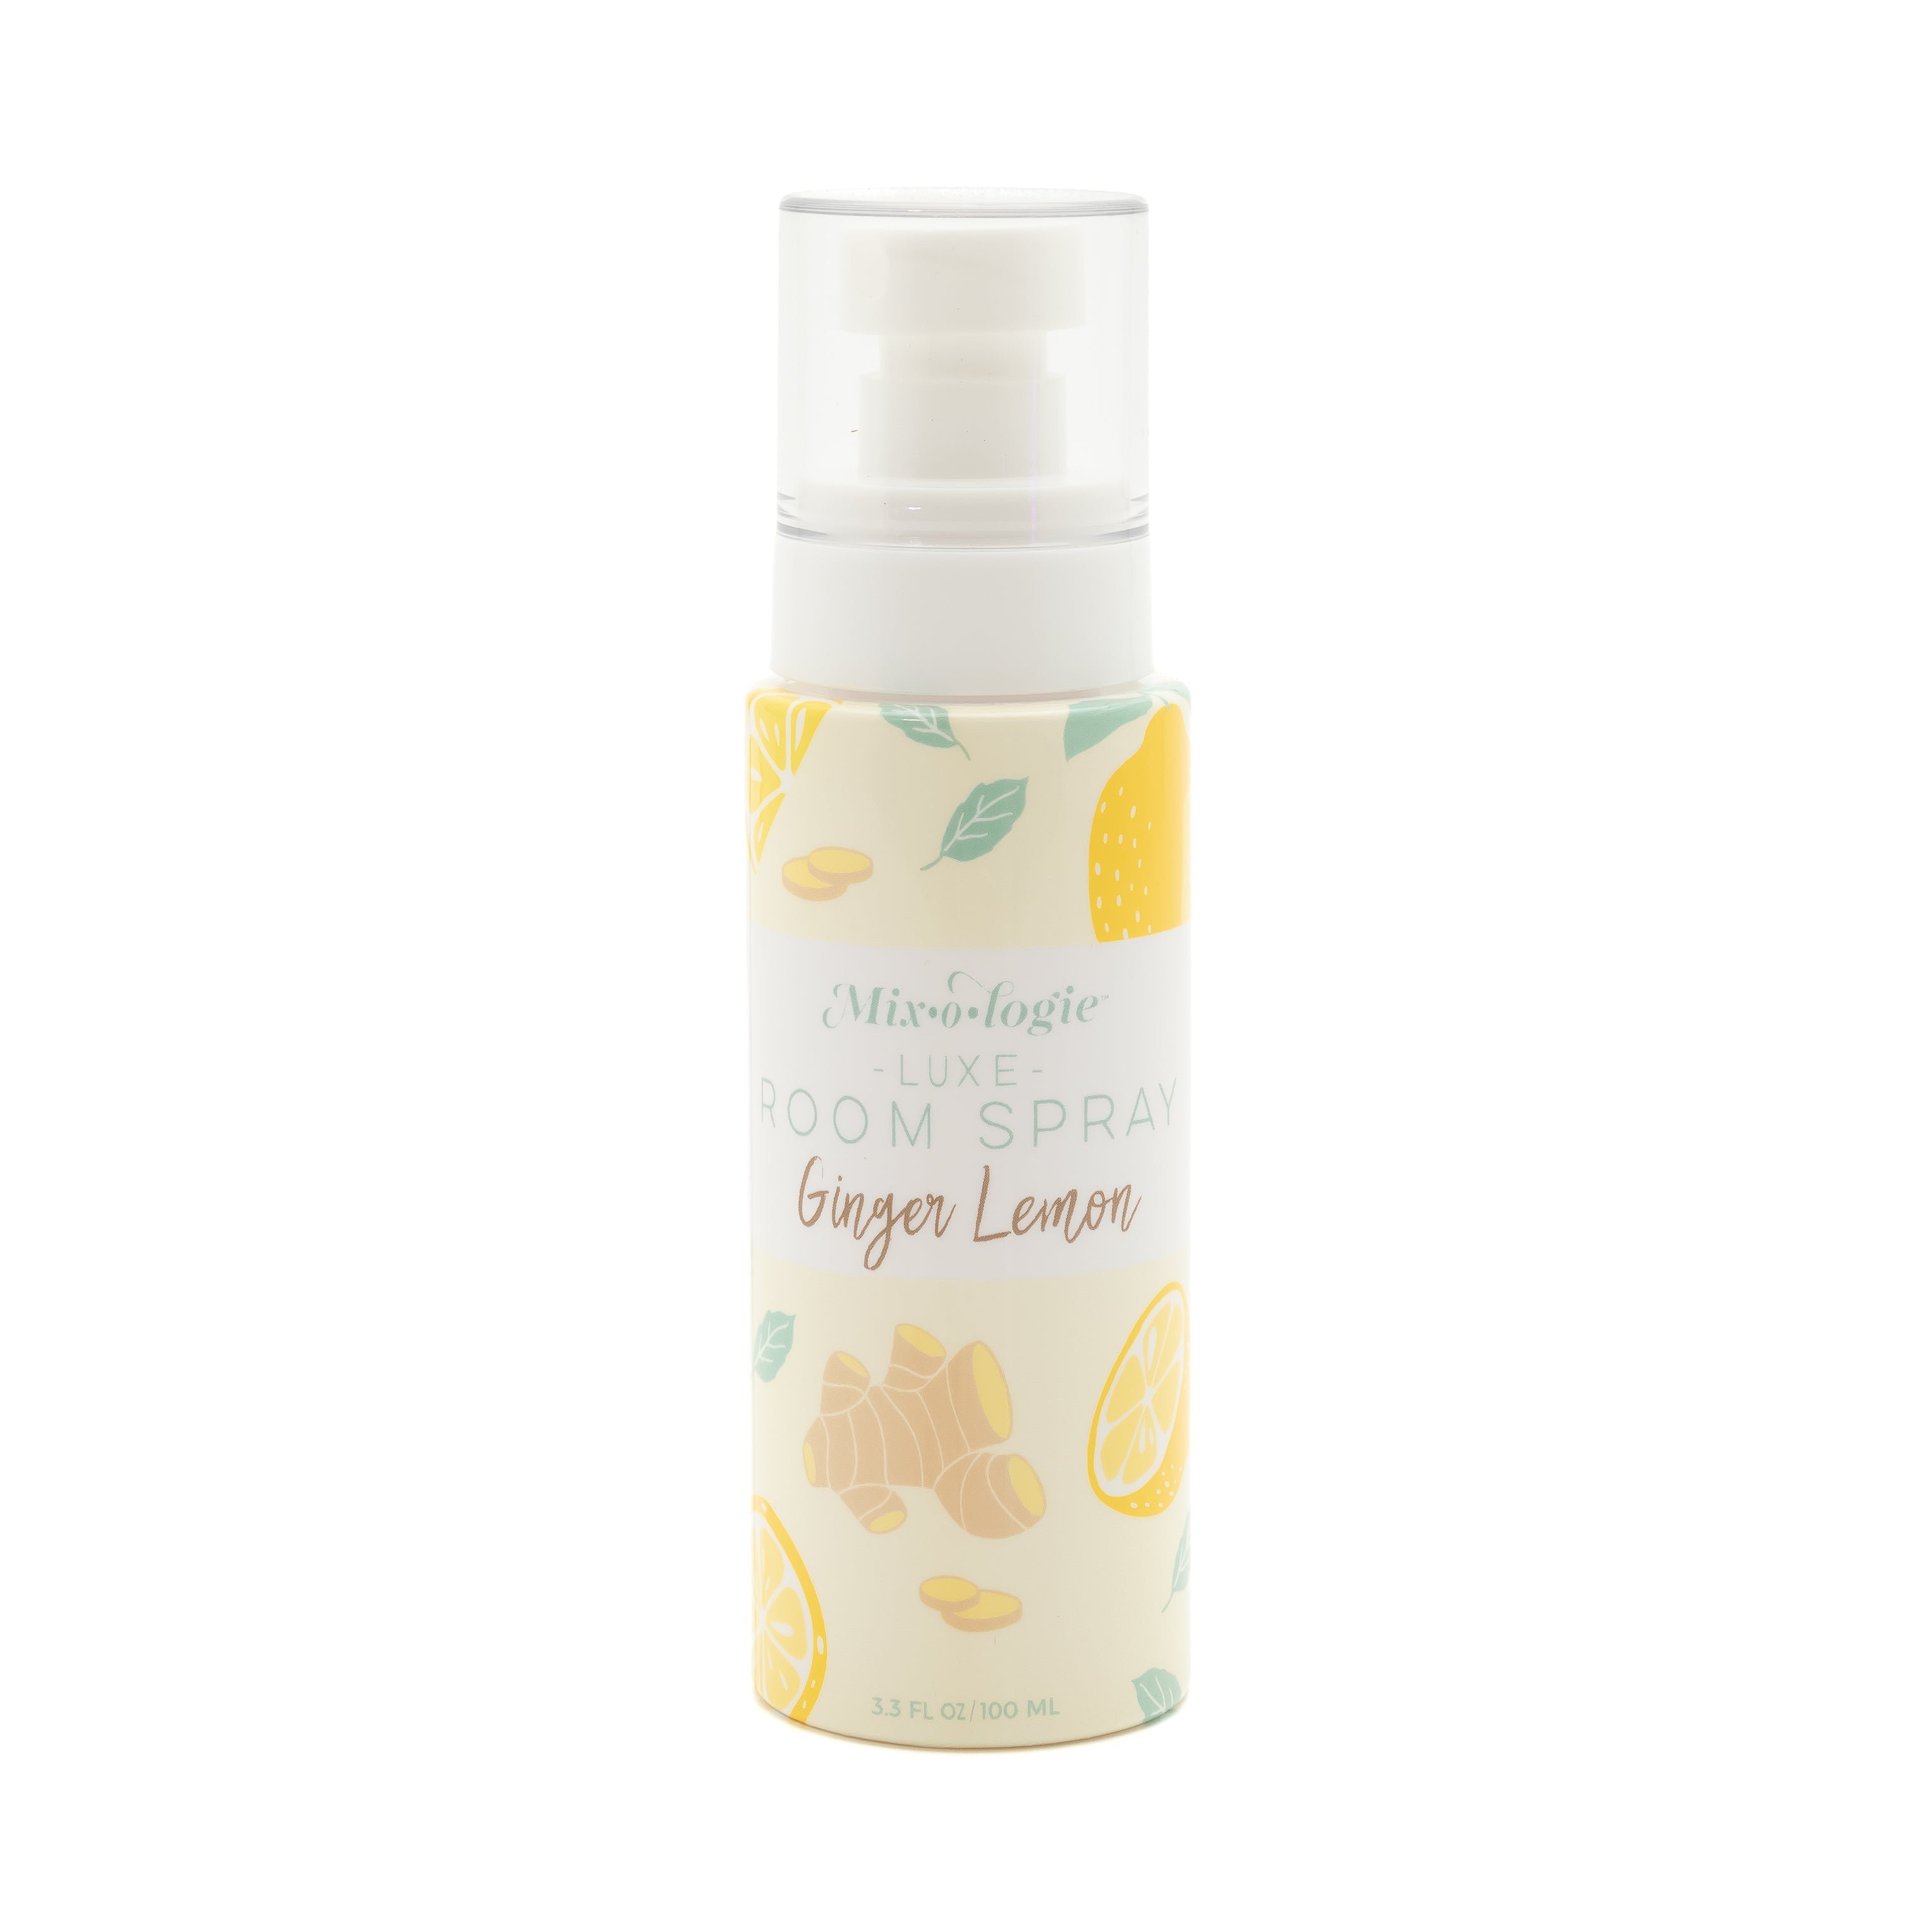 Ginger Lemon Luxe Room Spray